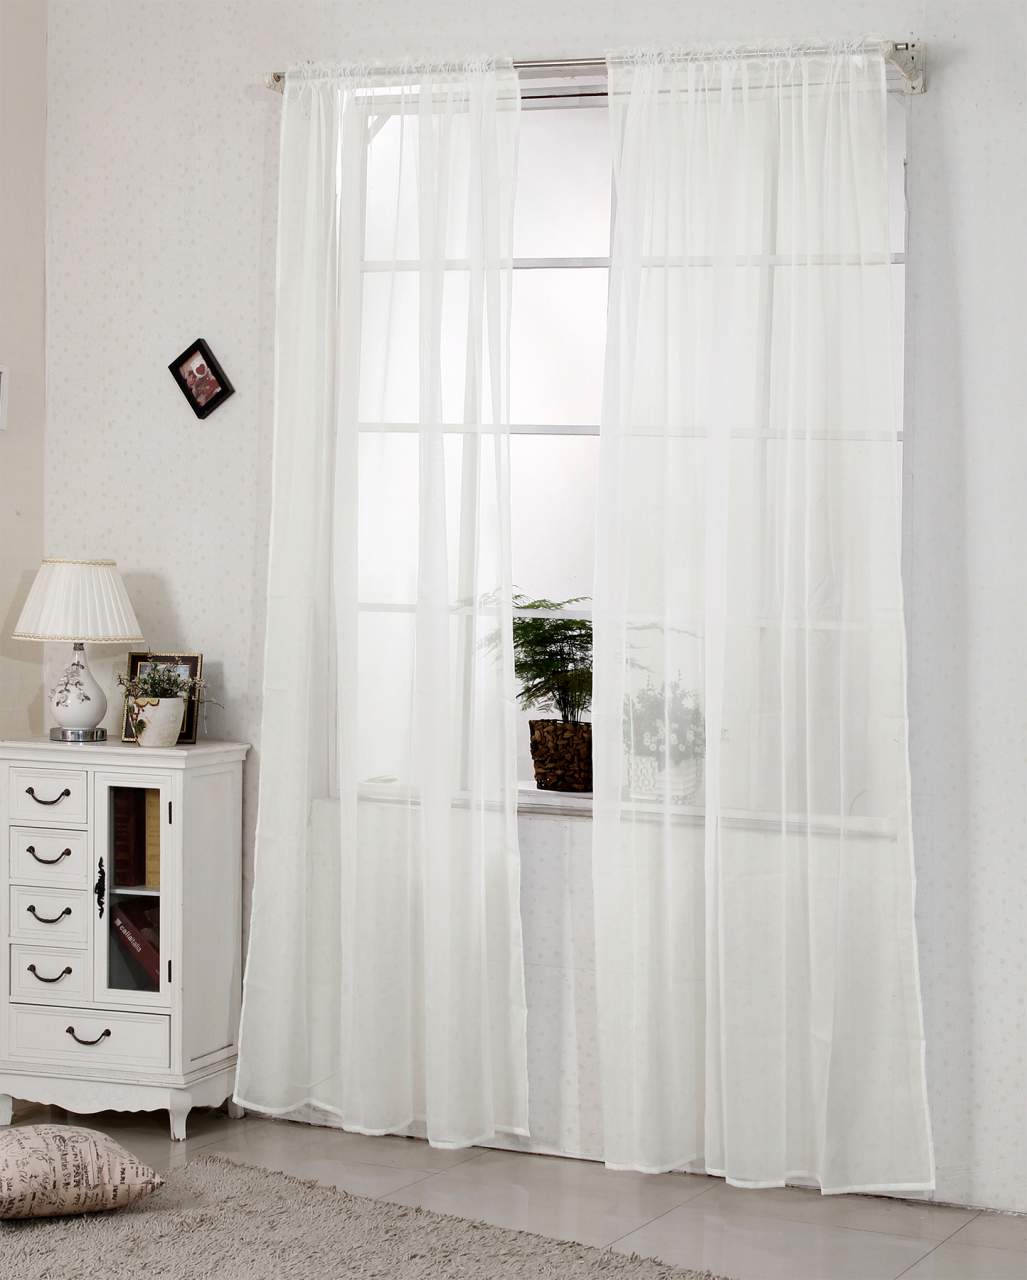 Gardinen Vorhang für Fensterschal Schlafzimmer Wohnzimmer mit Stores Voile transparent Kräuselband Schiene